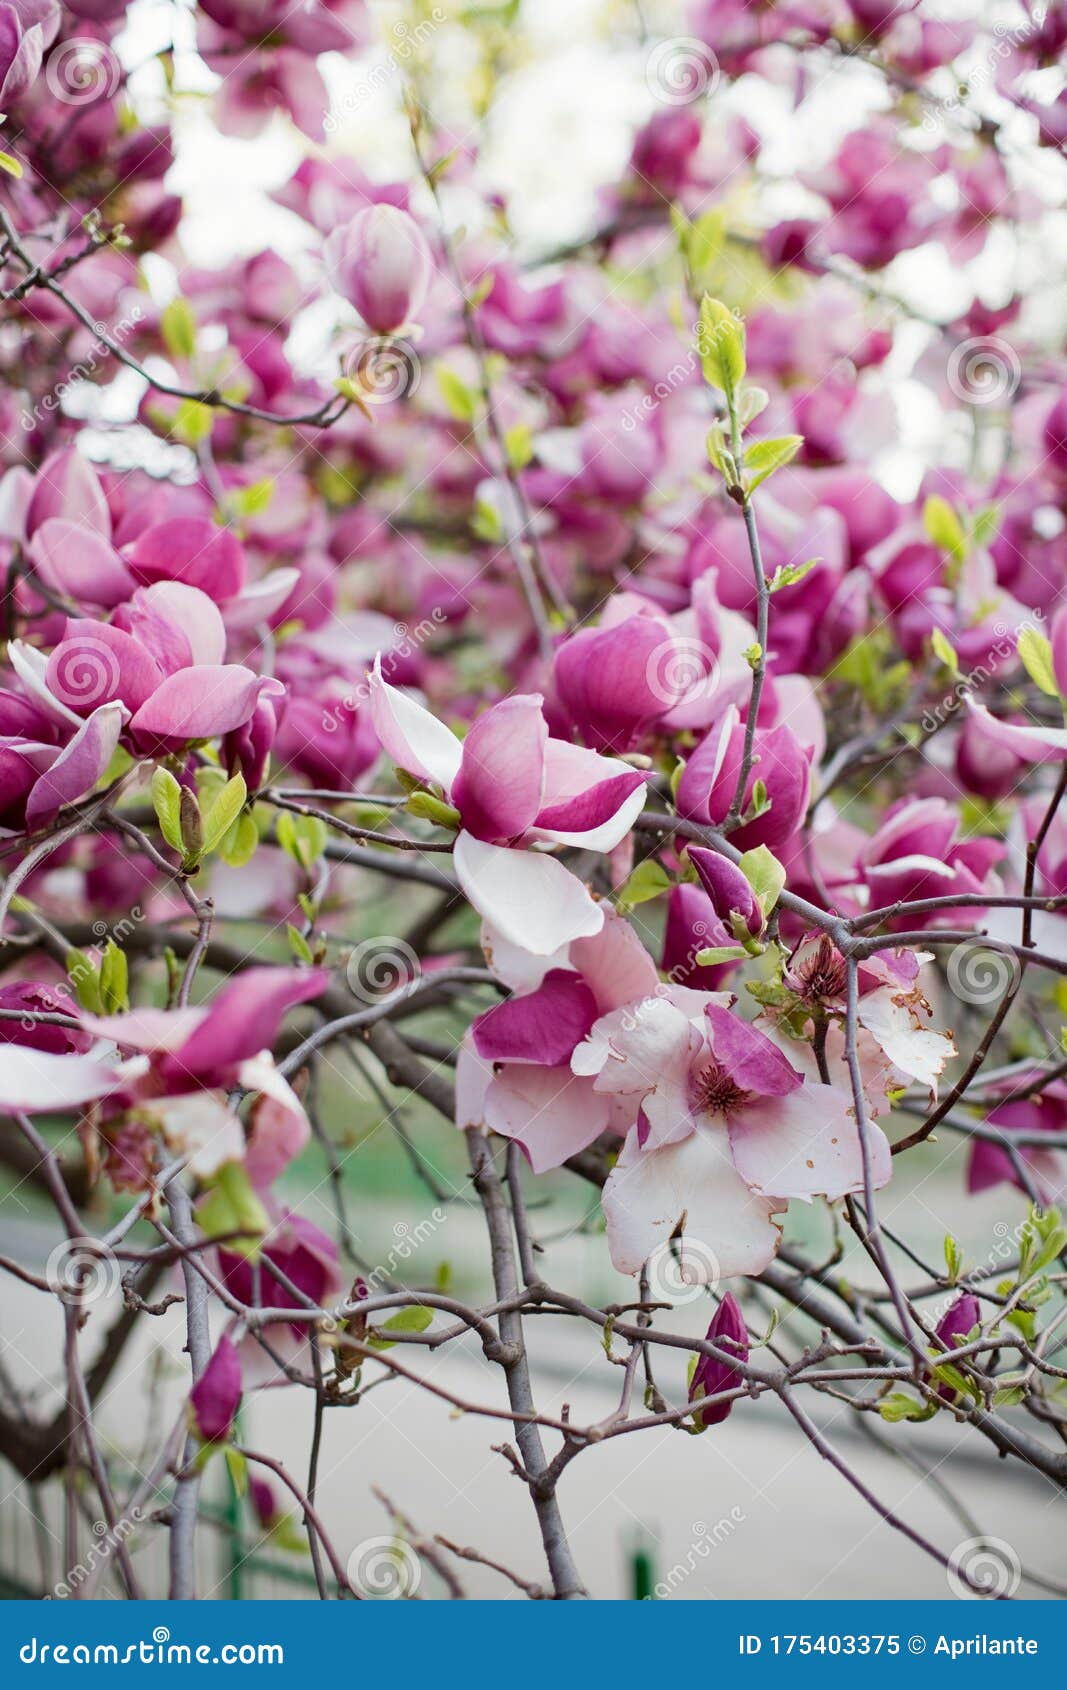 Árbol De Magnolia Con Flores Rosas Y Blancas Imagen de archivo - Imagen de  parque, cubo: 175403375